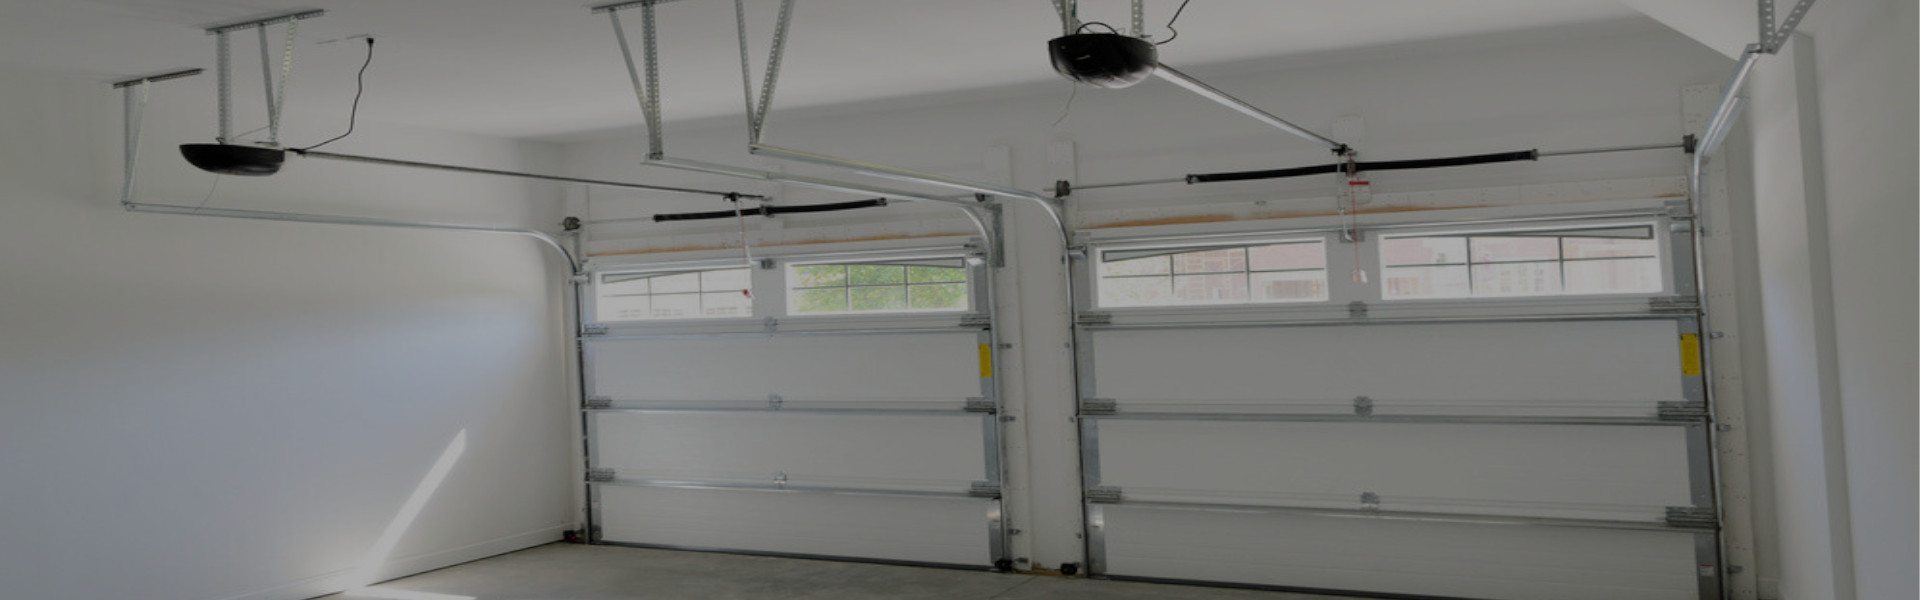 Slider Garage Door Repair, Glaziers in Hither Green, SE13